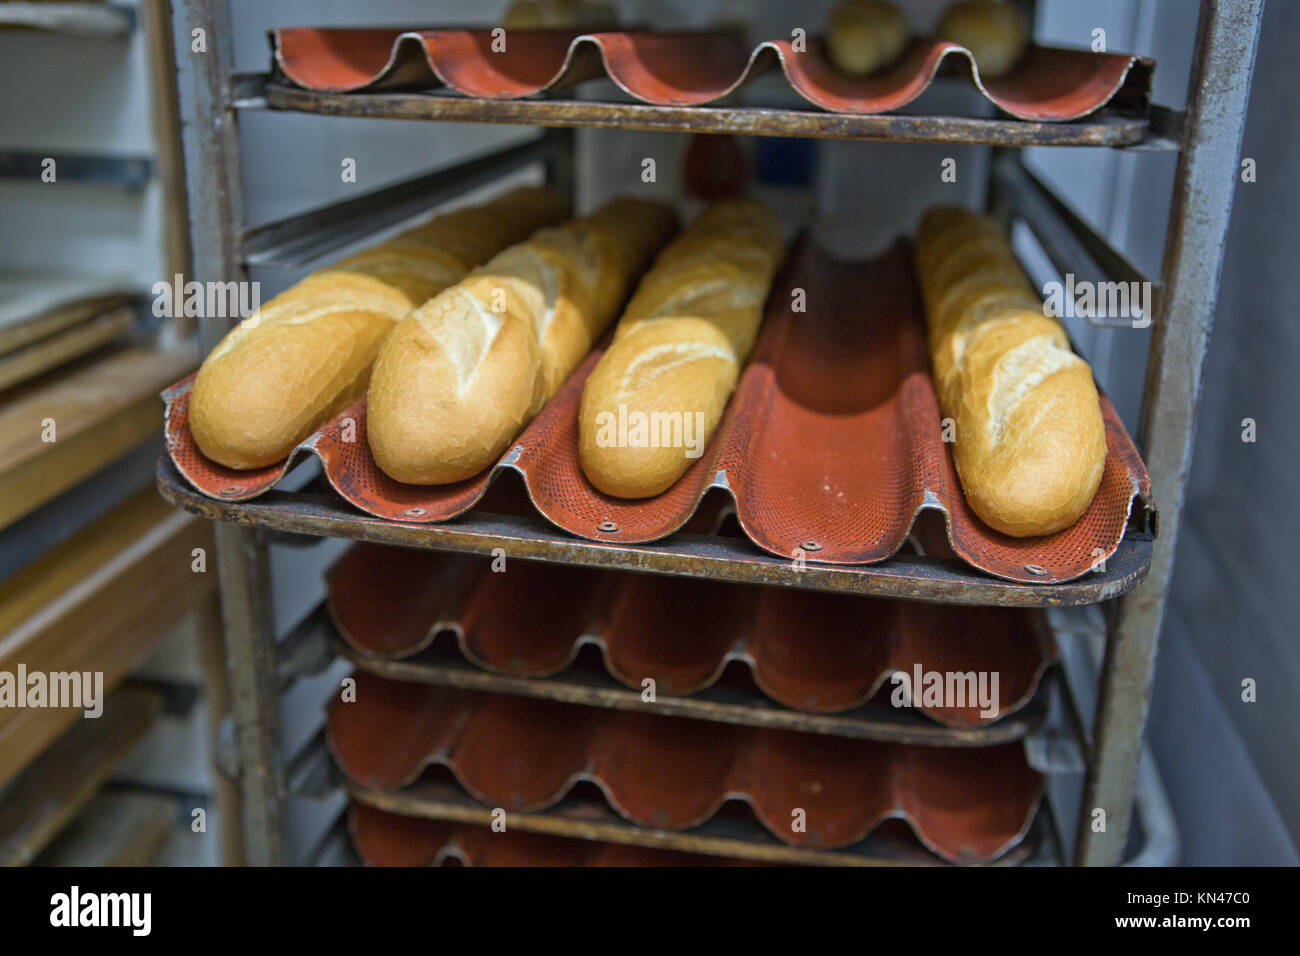 Filas de pan de baguette panes en racks en una panadería. Foto de stock